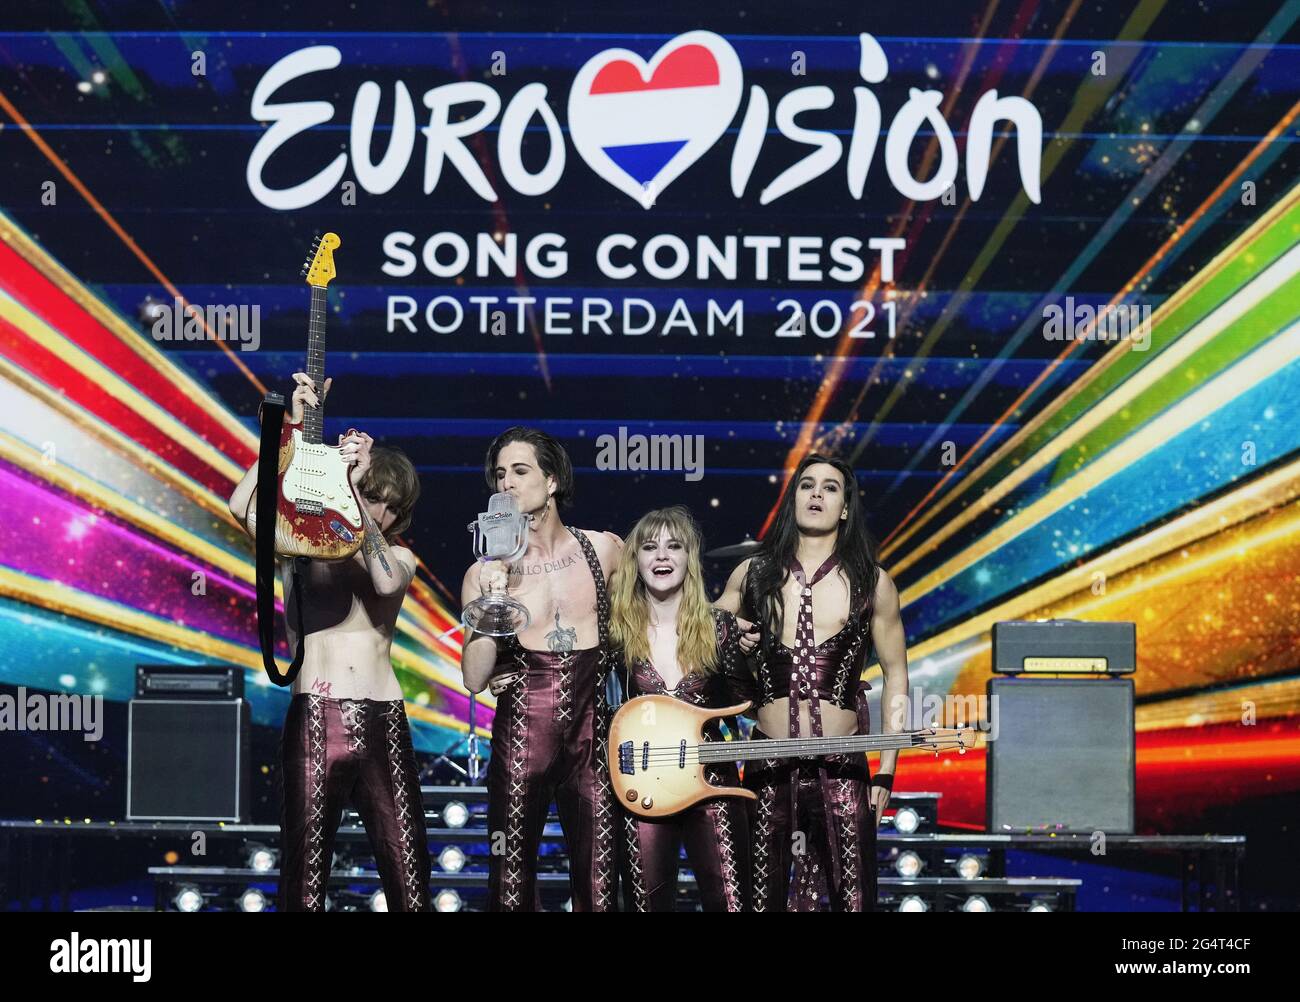 Rotterdam - gagnant Euro Vision Songcontest 2021 - Maneskin combinaison Italie où: Rotterdam, pays-Bas quand: 23 mai 2021 crédit: Bruno Press/WENN **disponible uniquement pour publication au Royaume-Uni** Banque D'Images